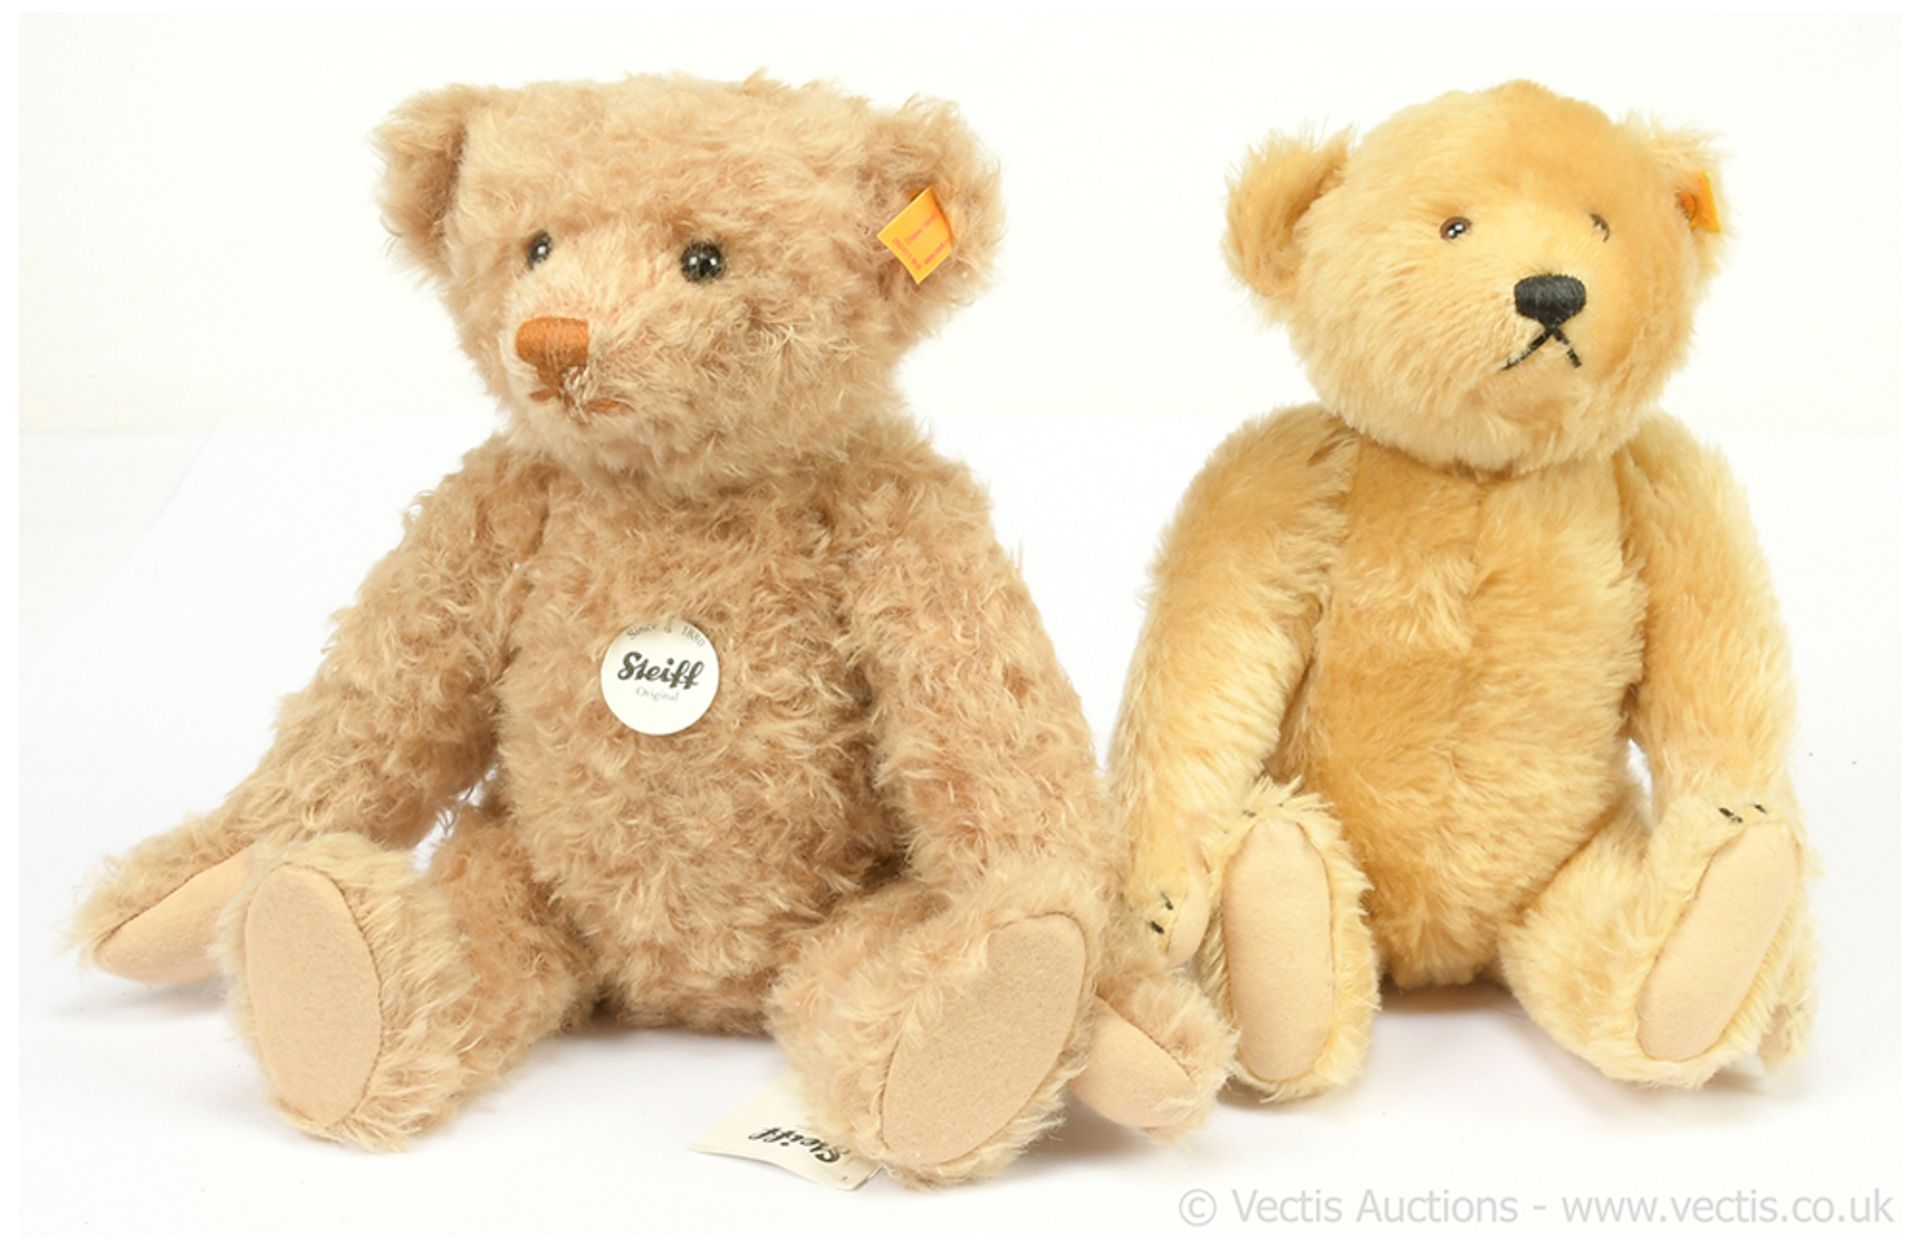 PAIR inc Steiff teddy bears: (1) Steiff Original